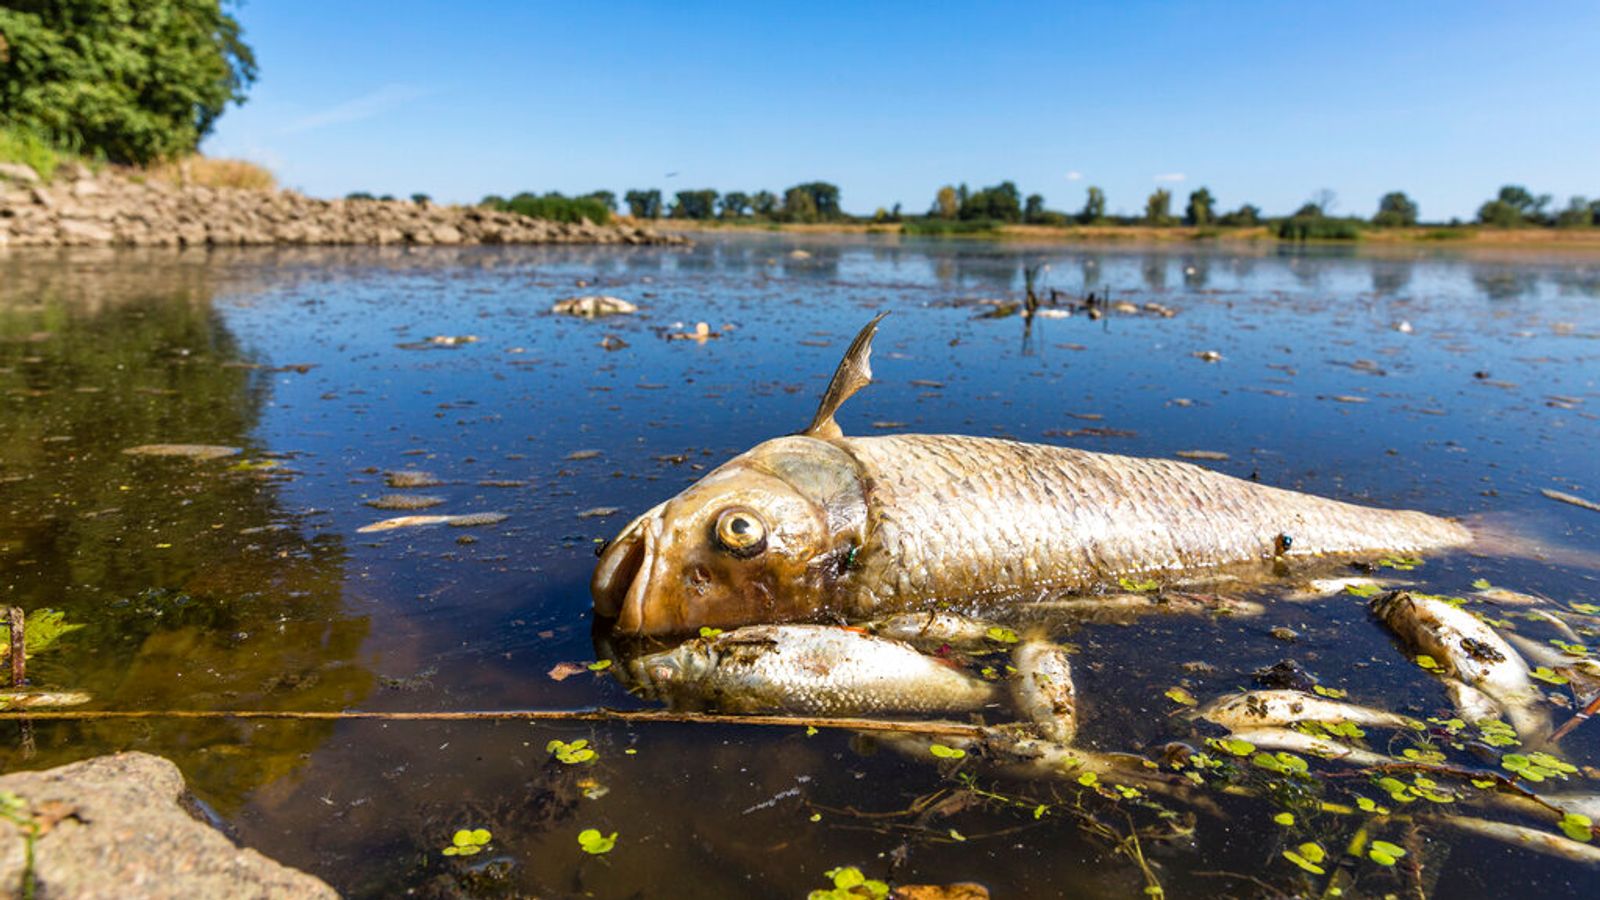 Tony martwych ryb wyciąganych z polskiej Odry mogą powodować zanieczyszczenie, ostrzegają urzędnicy |  Wiadomości ze świata